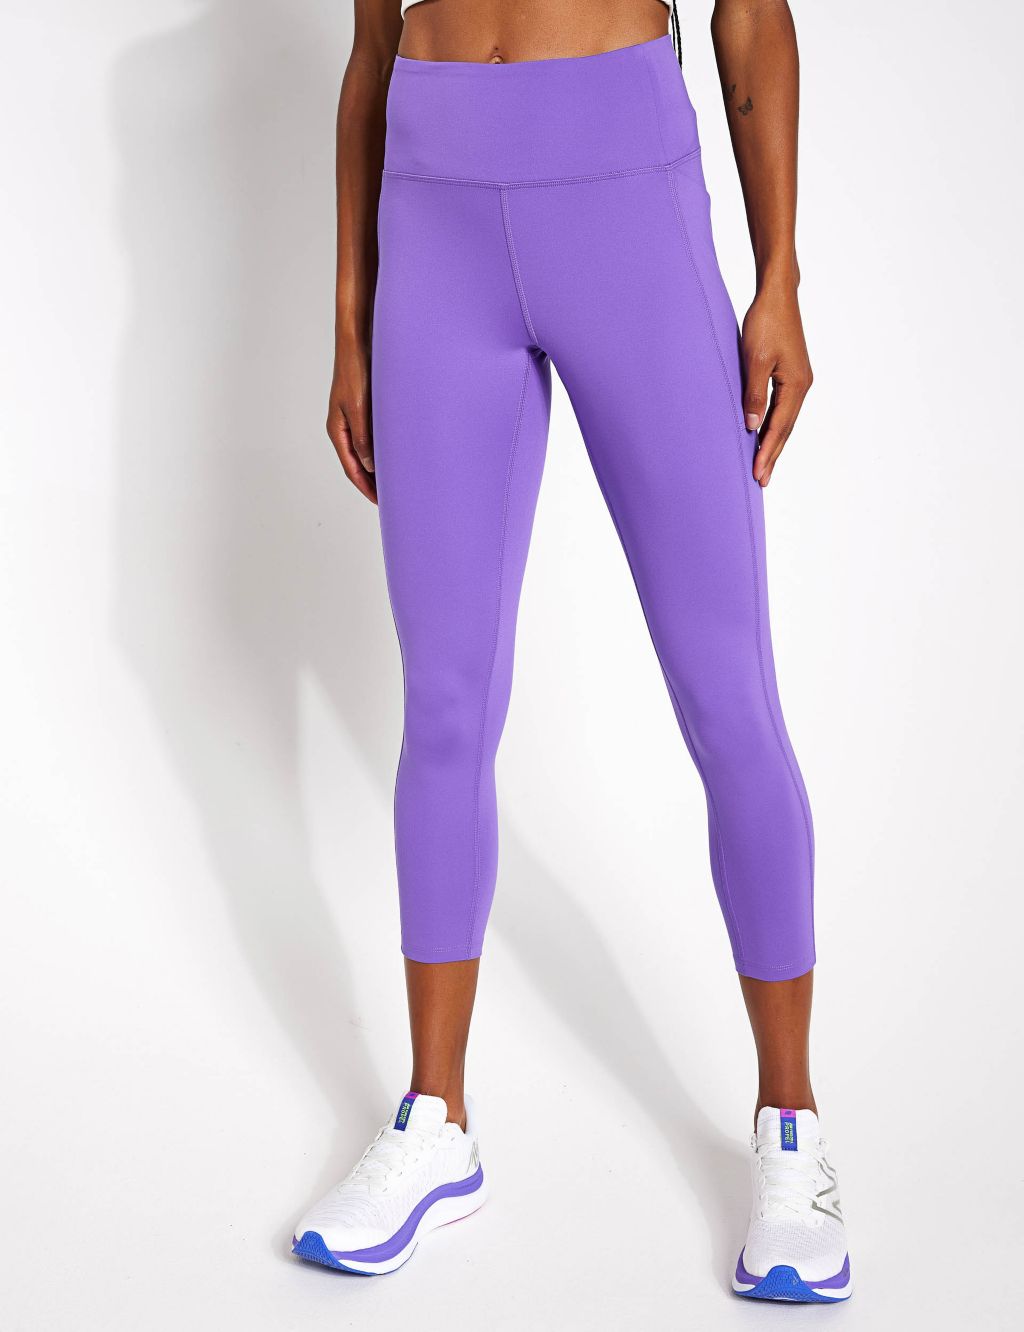 Pockets For Women - Sweaty Betty All Day 7/8 Leggings, Purple, Women's